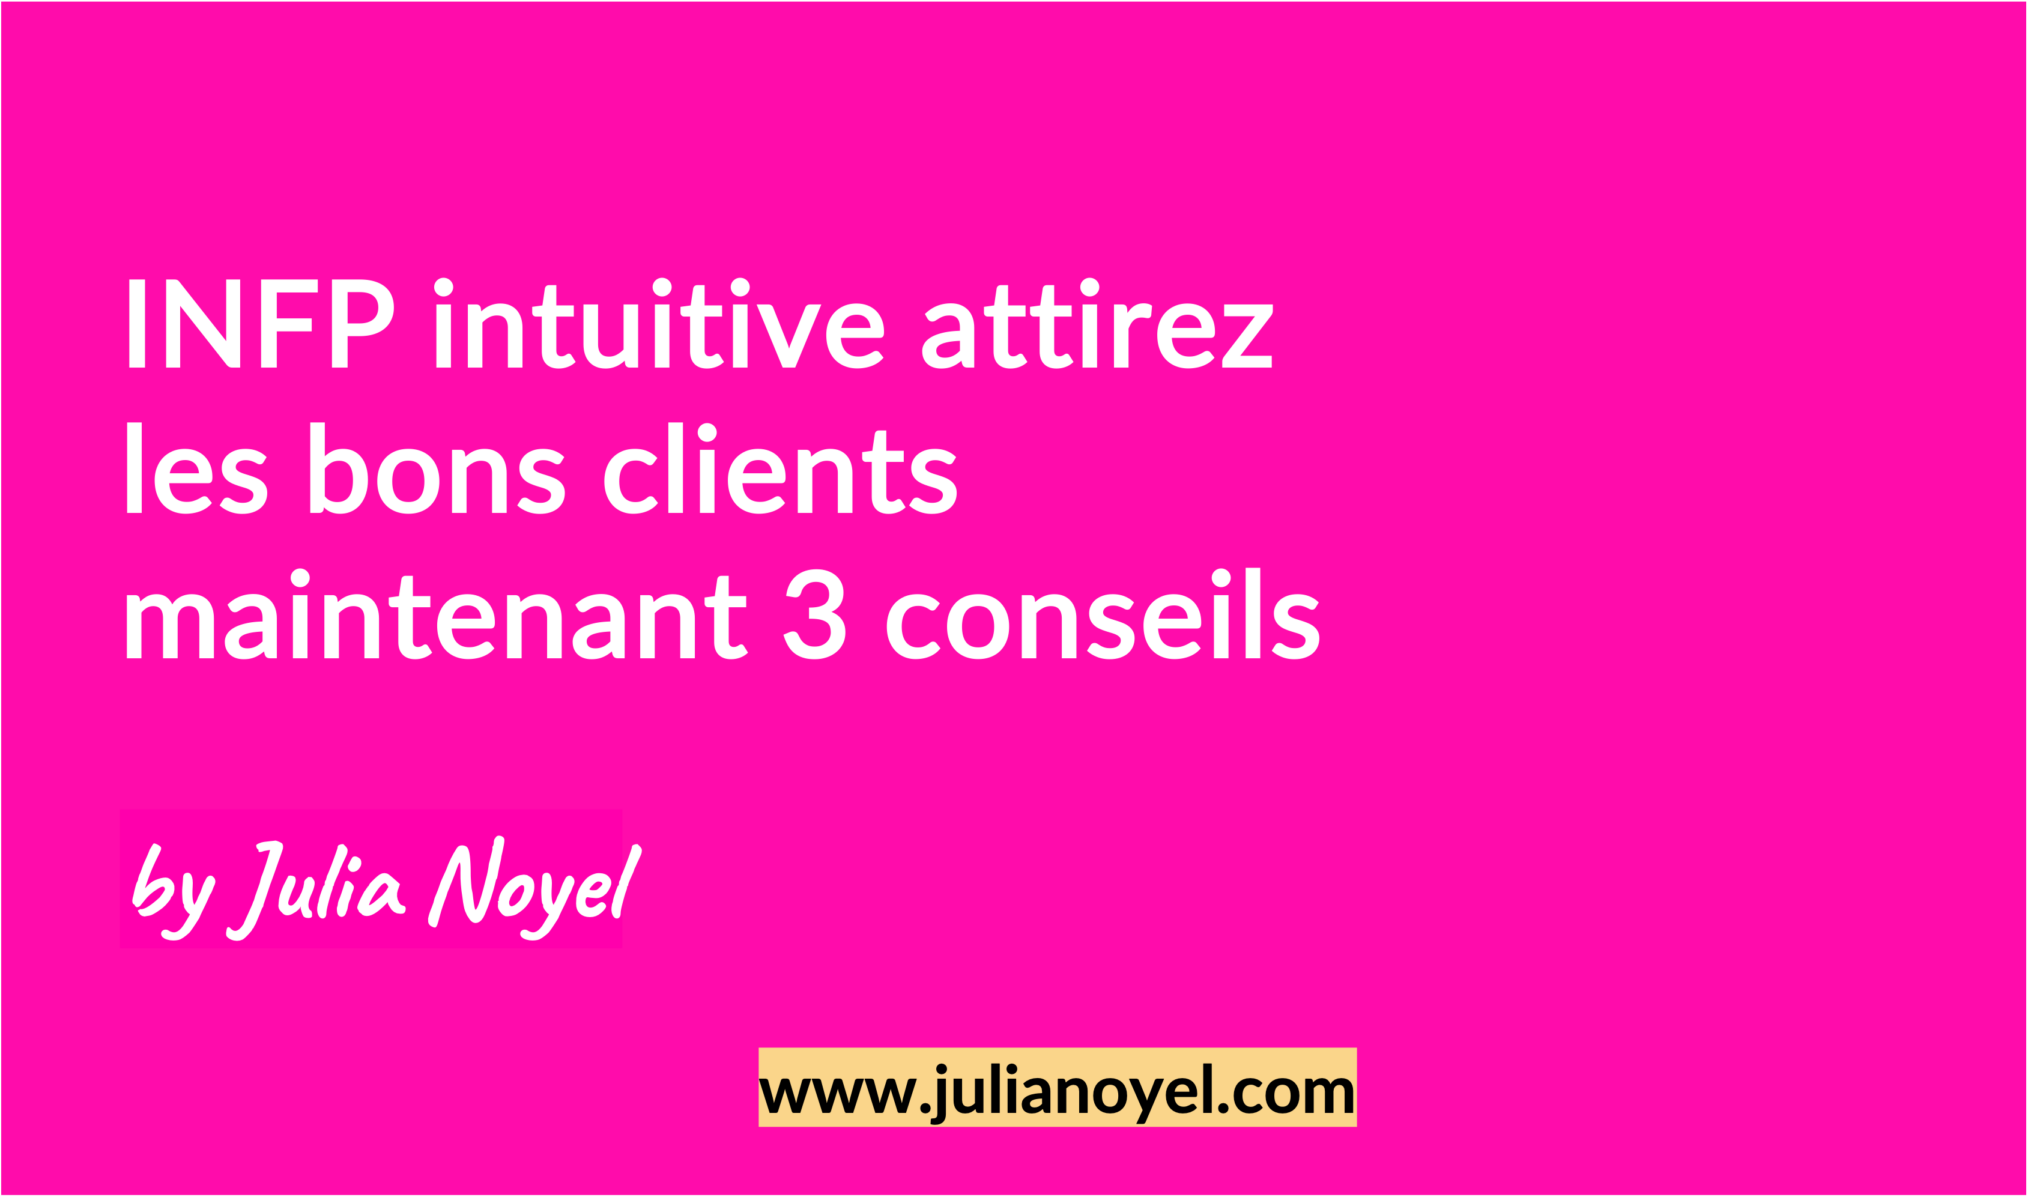 INFP intuitive attirez les bons clients maintenant 3 conseils by Julia Noyel